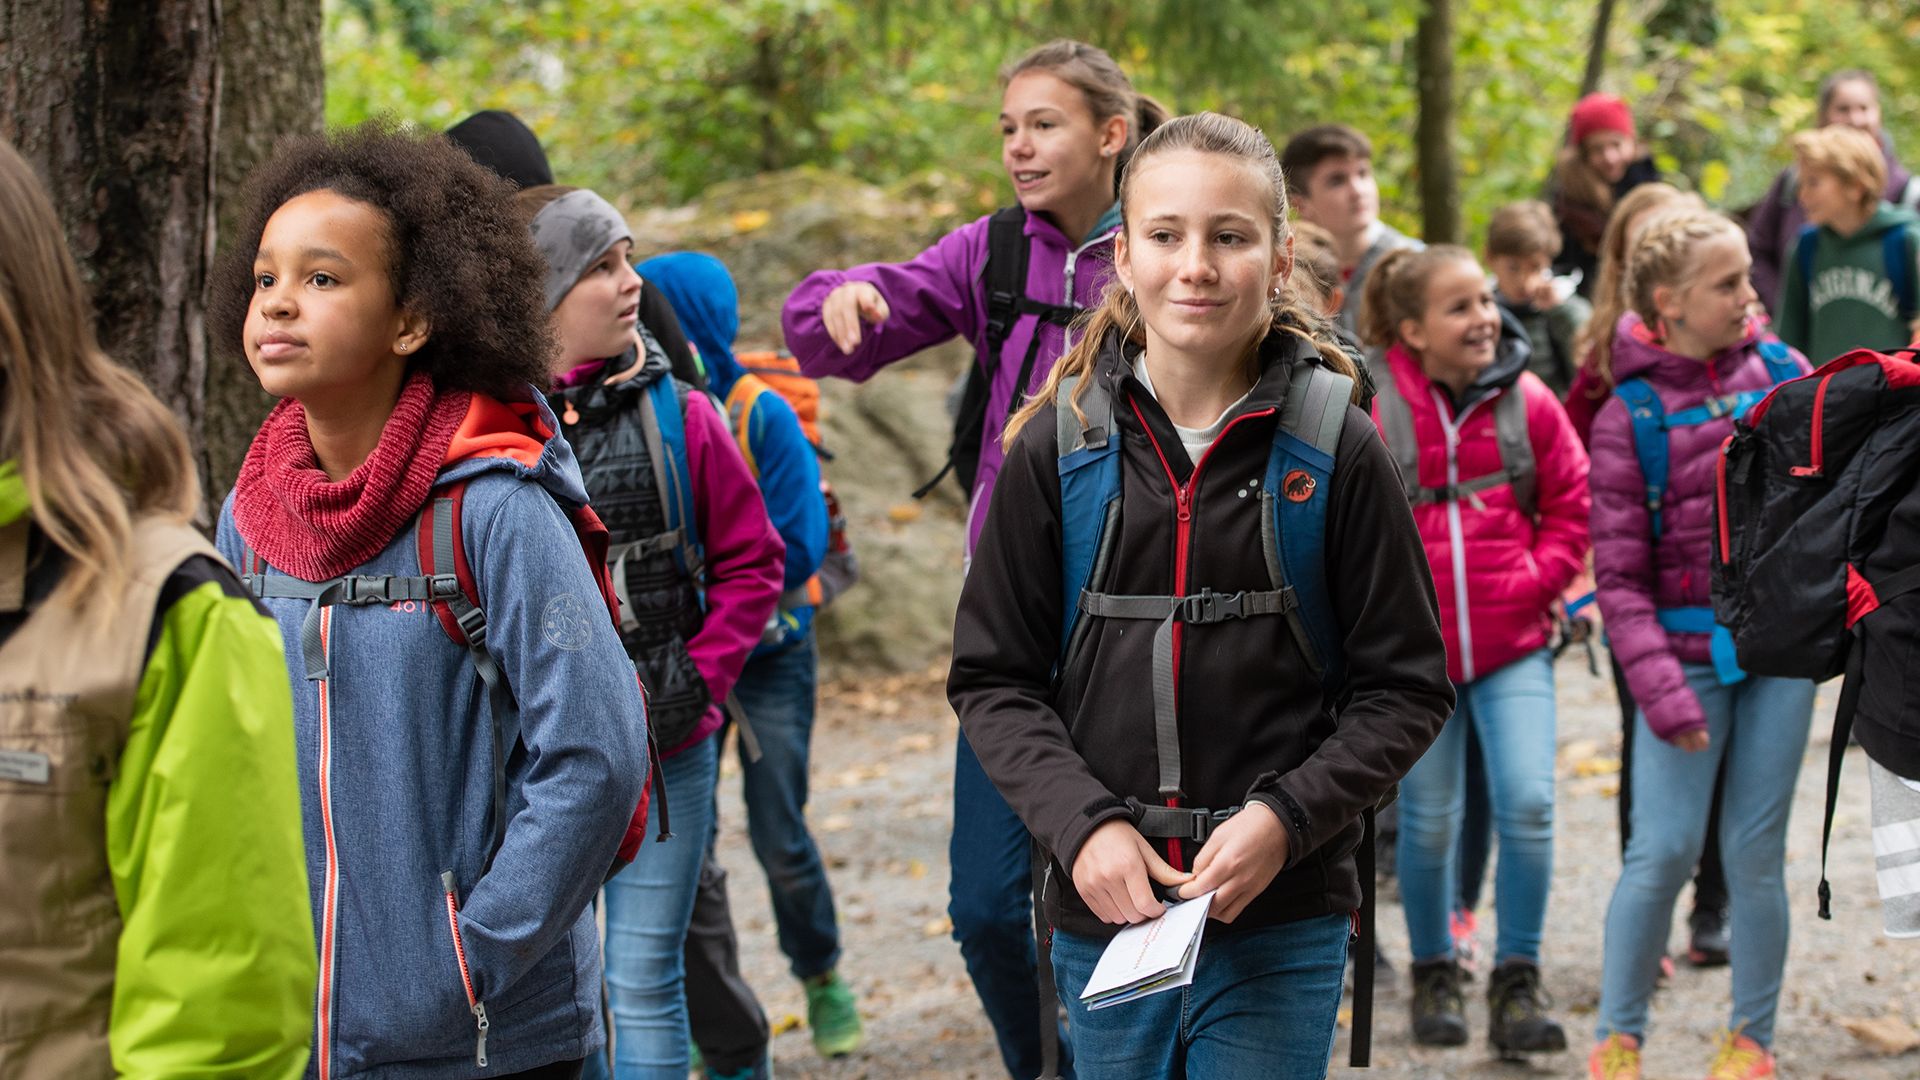 Una classe scolastica in escursione al Parco naturale e faunistico di Goldau.